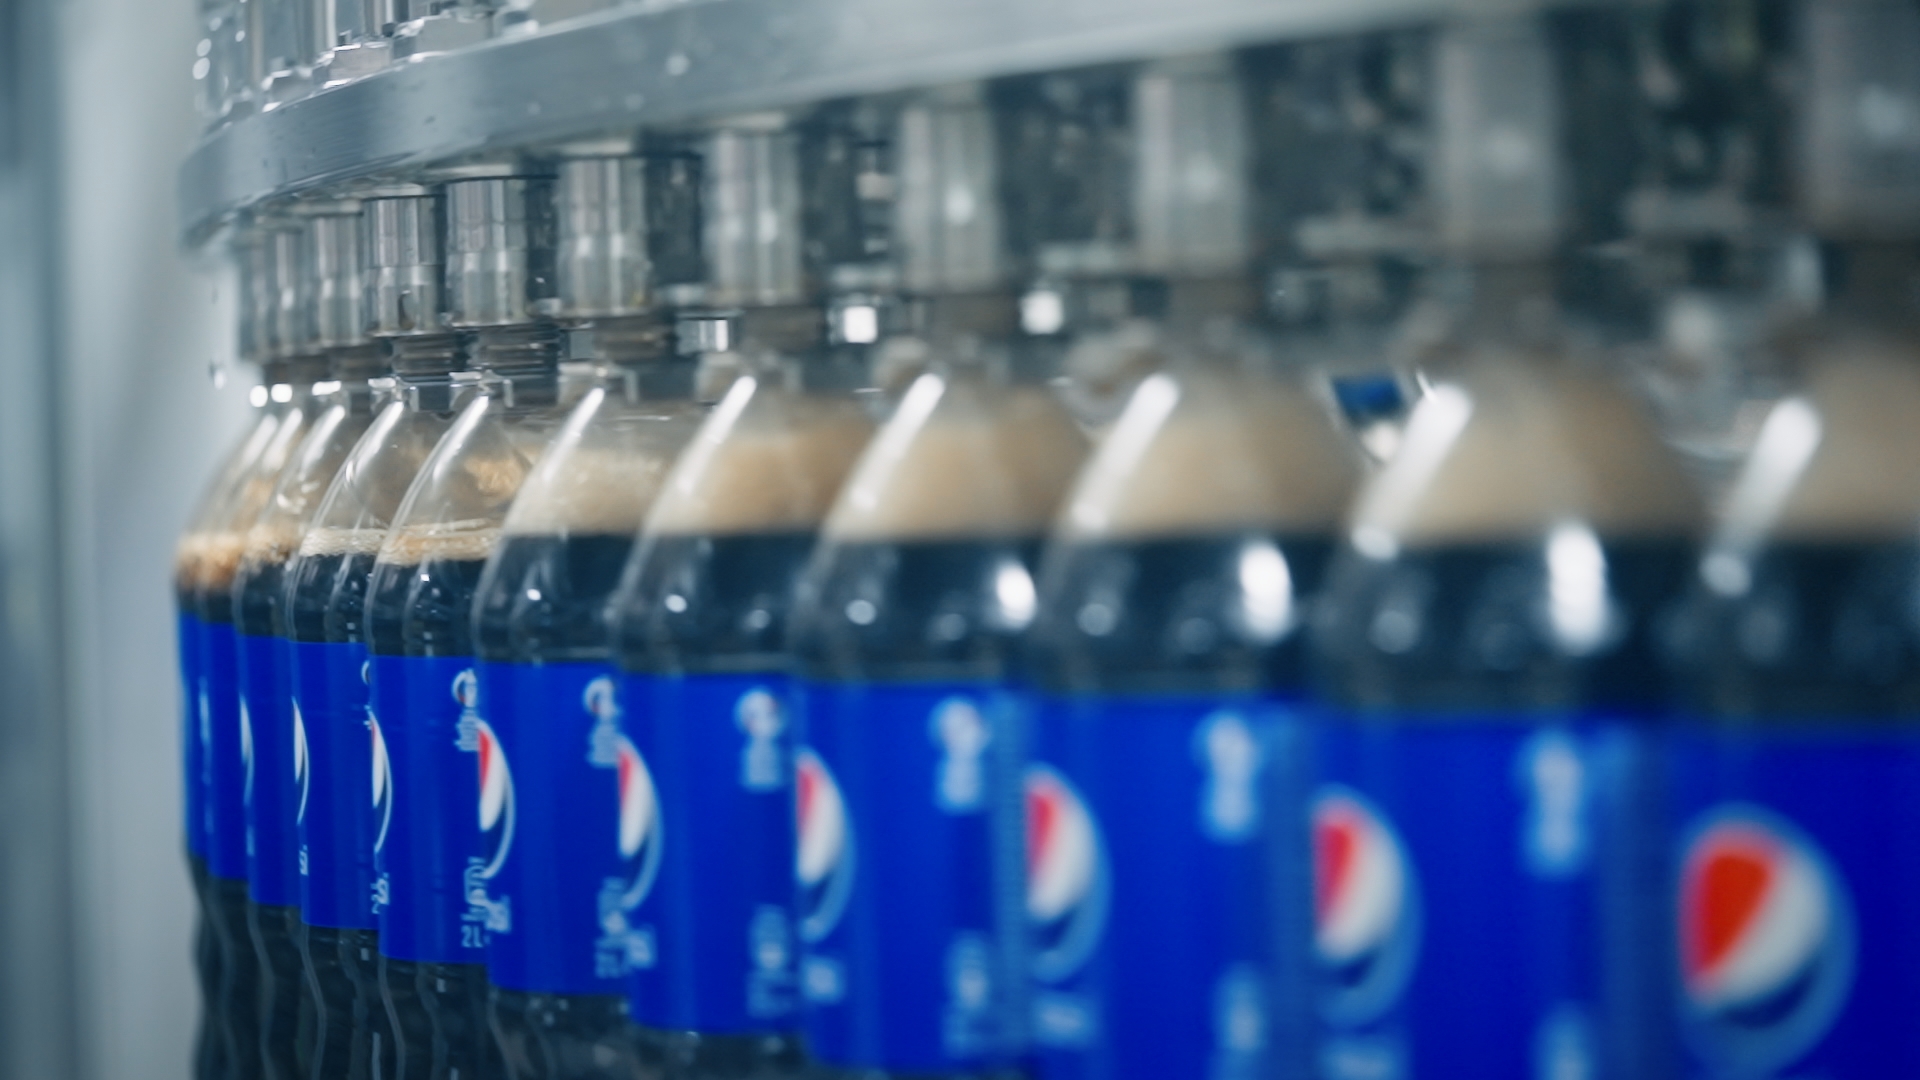 PepsiCo investește 13 milioane de dolari în fabrica de băuturi răcoritoare Dragomirești, inaugurând cea mai modernă linie de producție a companiei din Europa